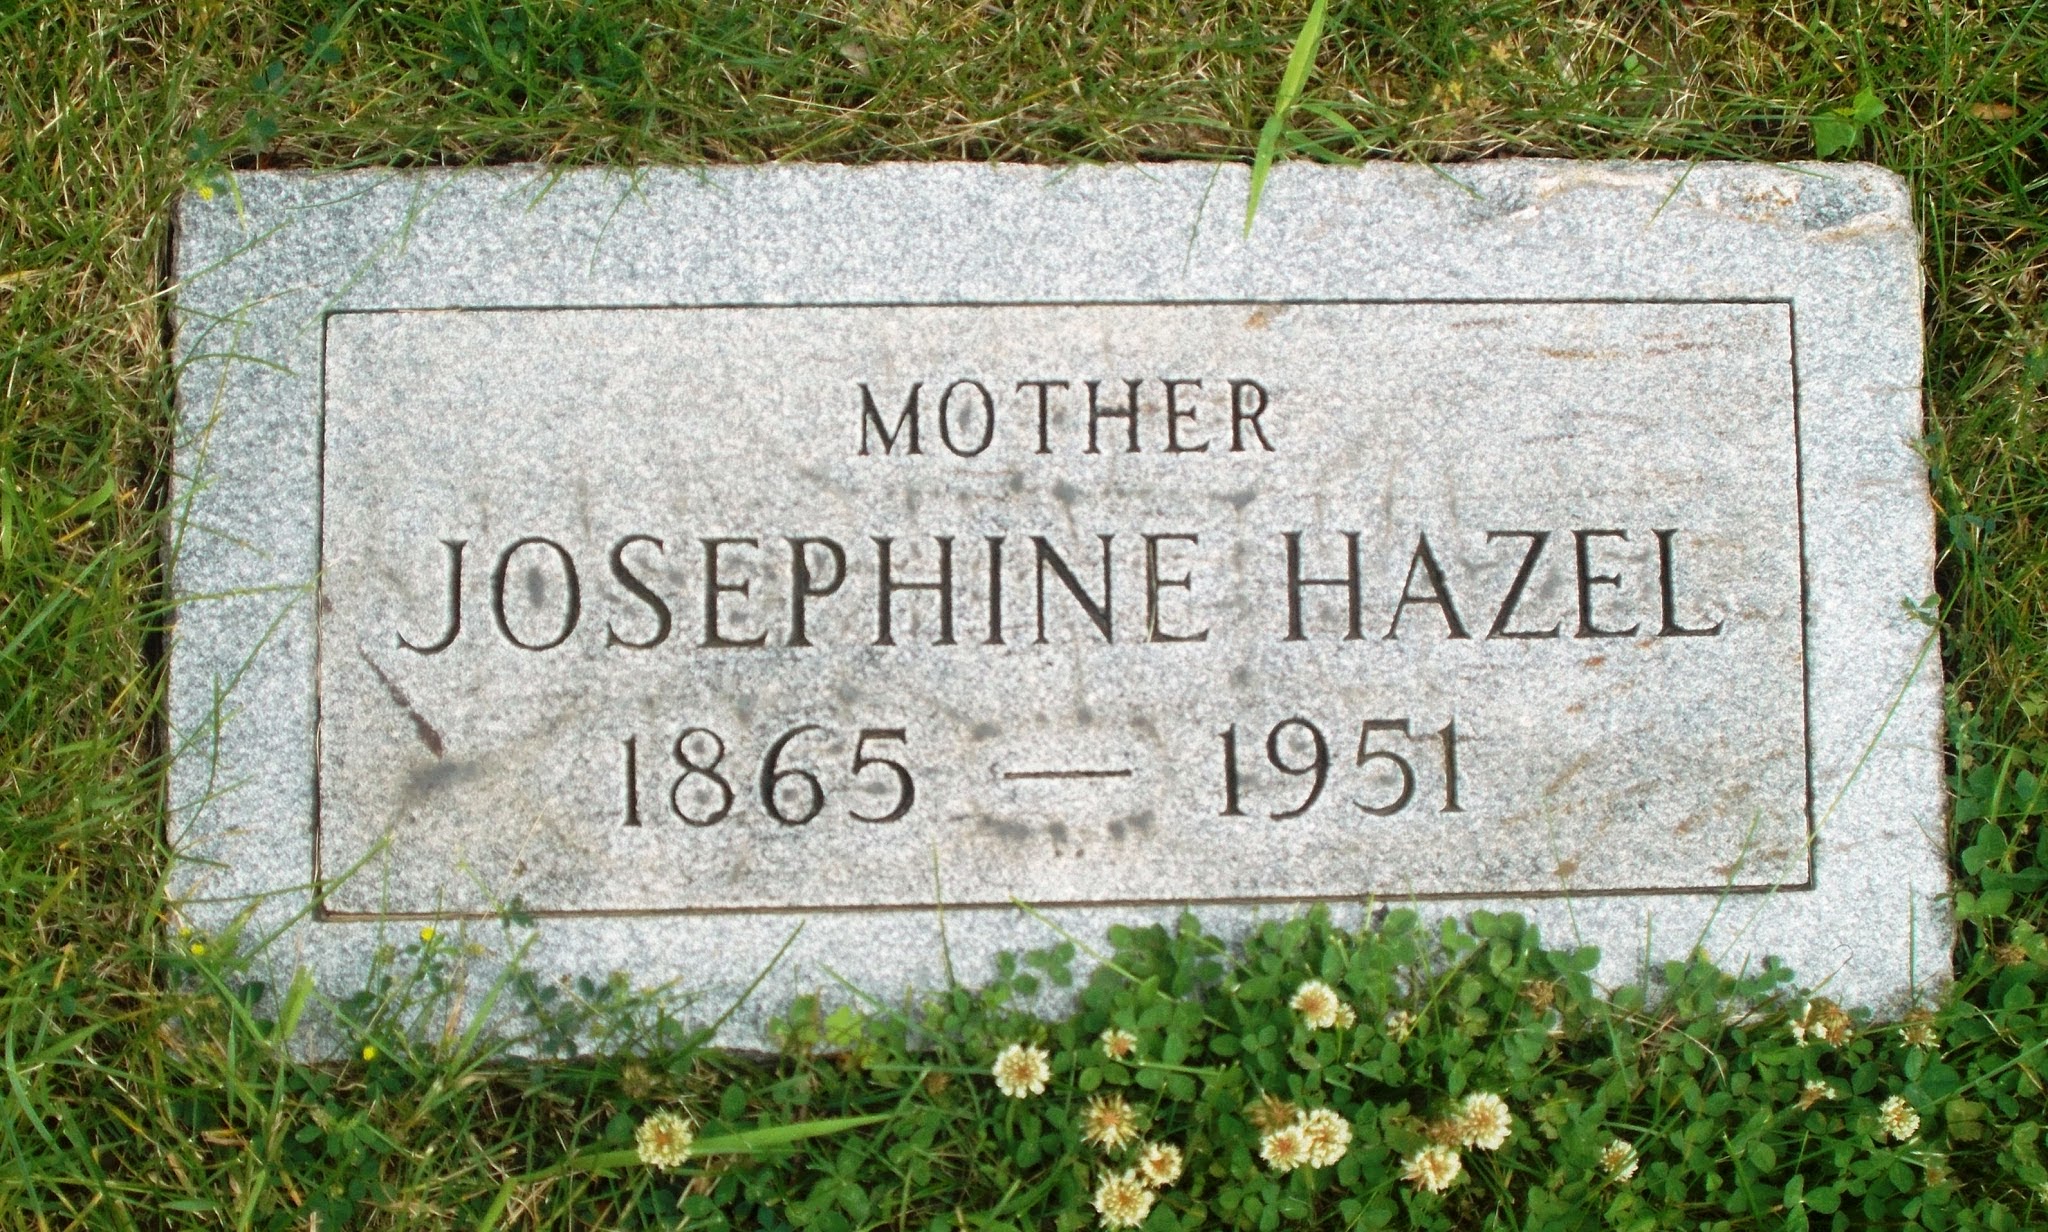 Josephine Hazel